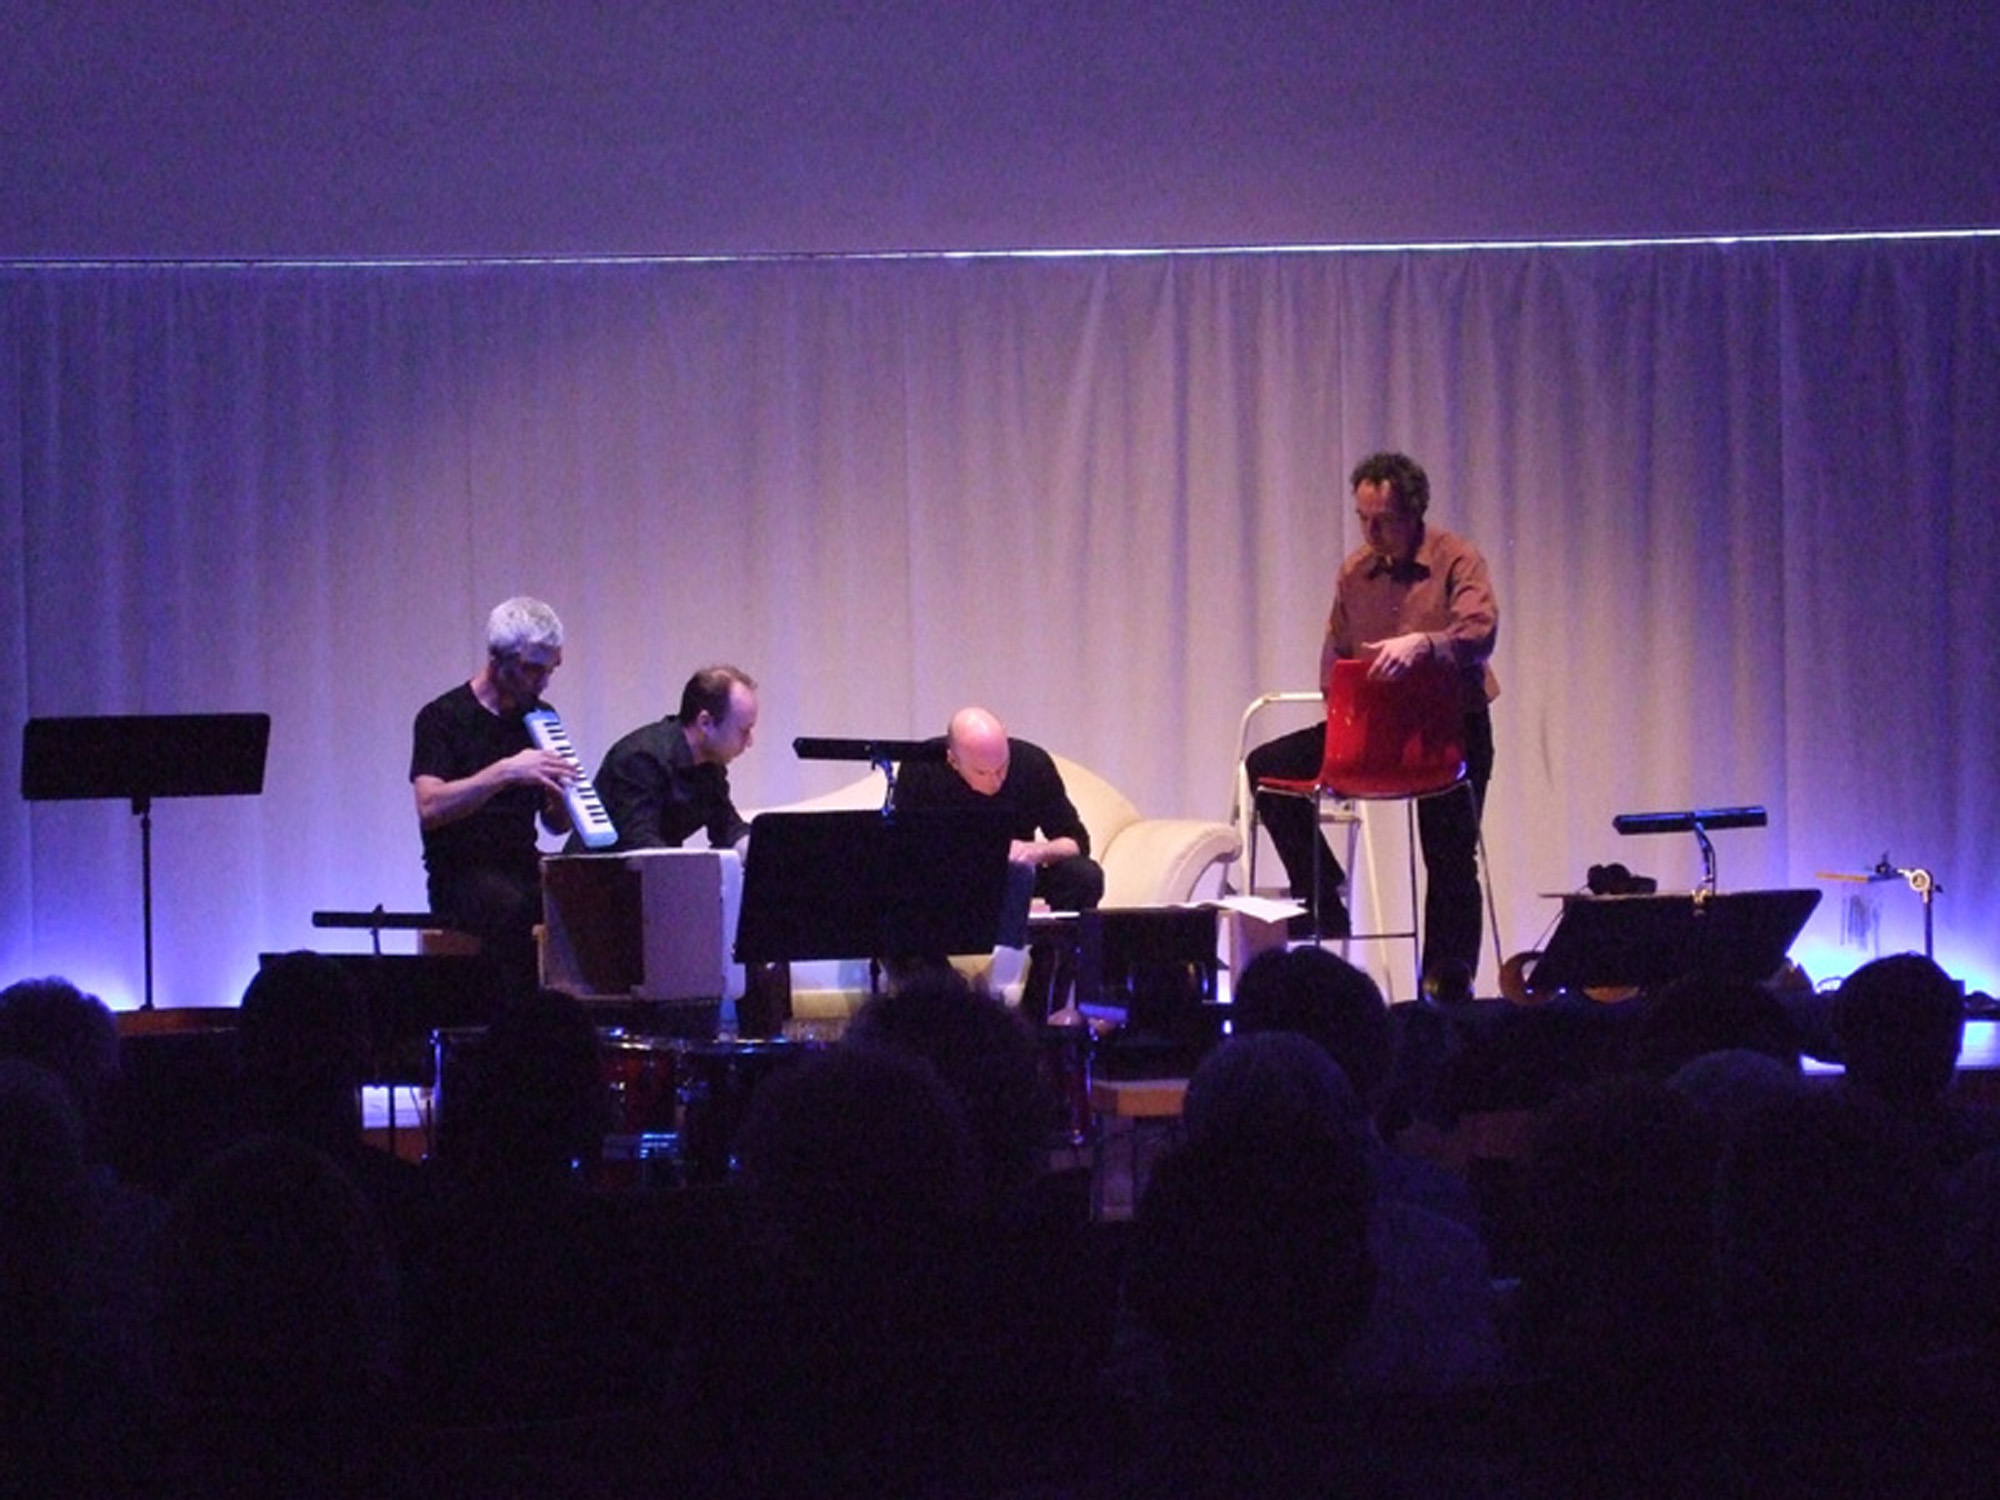 John Cage 100, neue Musik Konzert 2012 im Stadthaussaal. 4 Musiker auf der Bühne